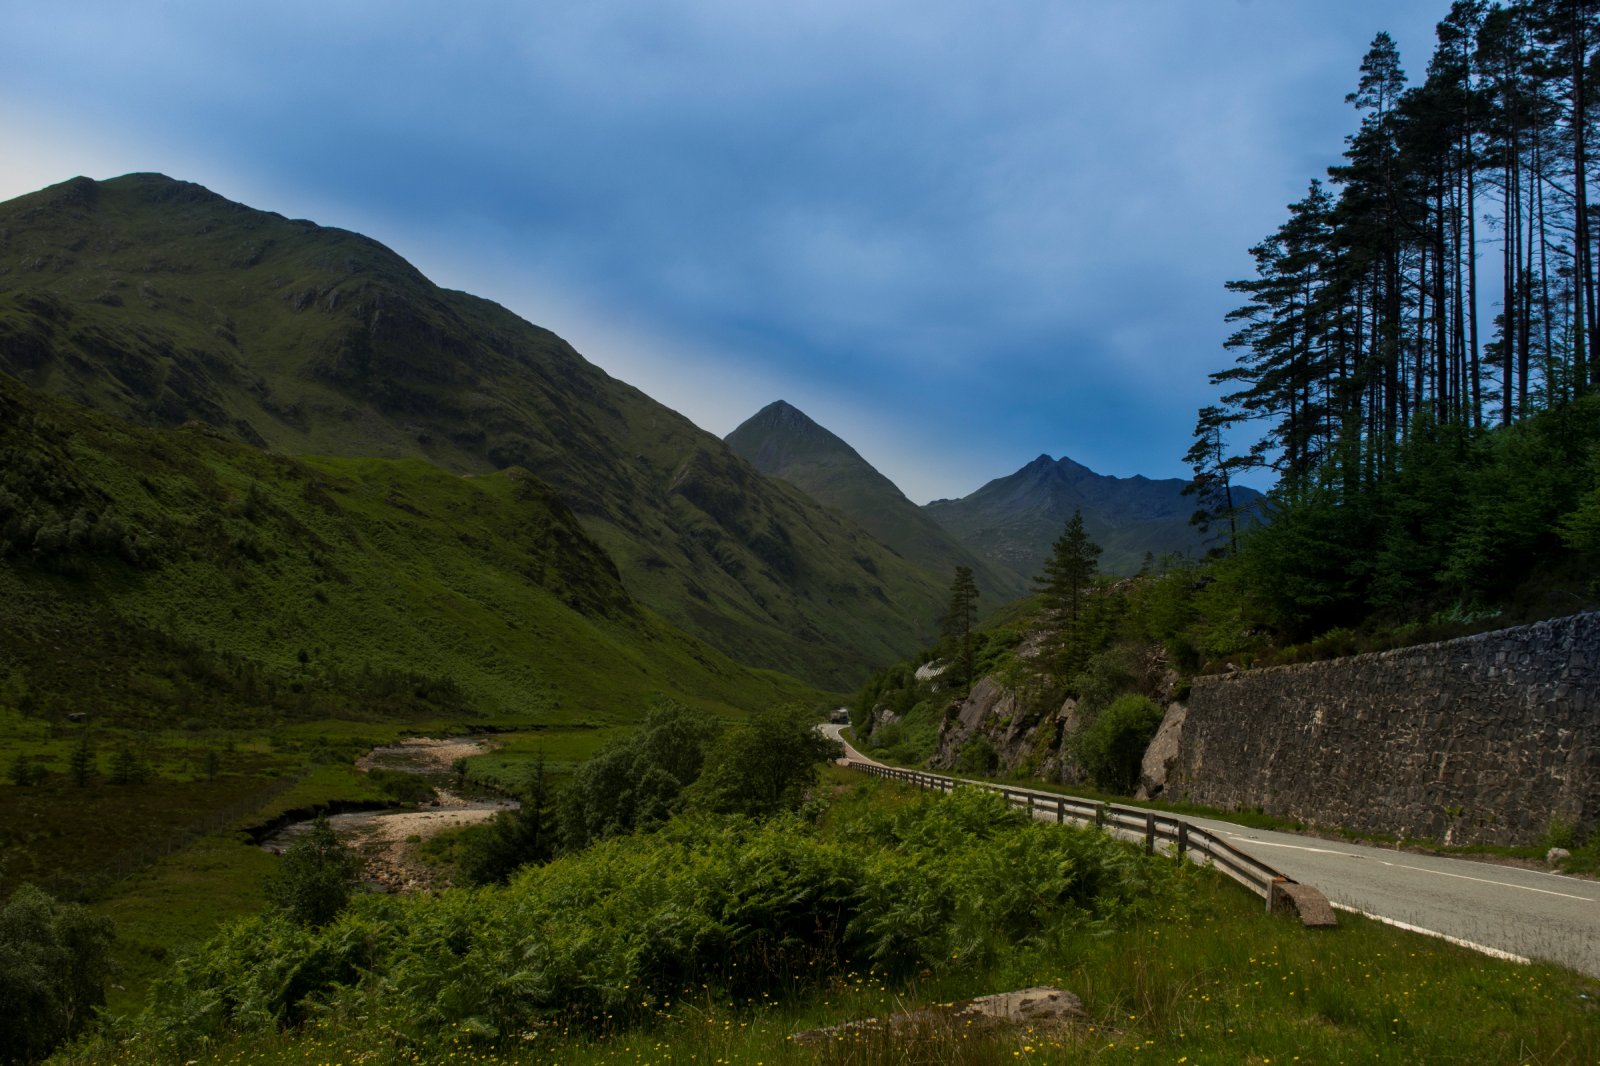 The road to Glencoe